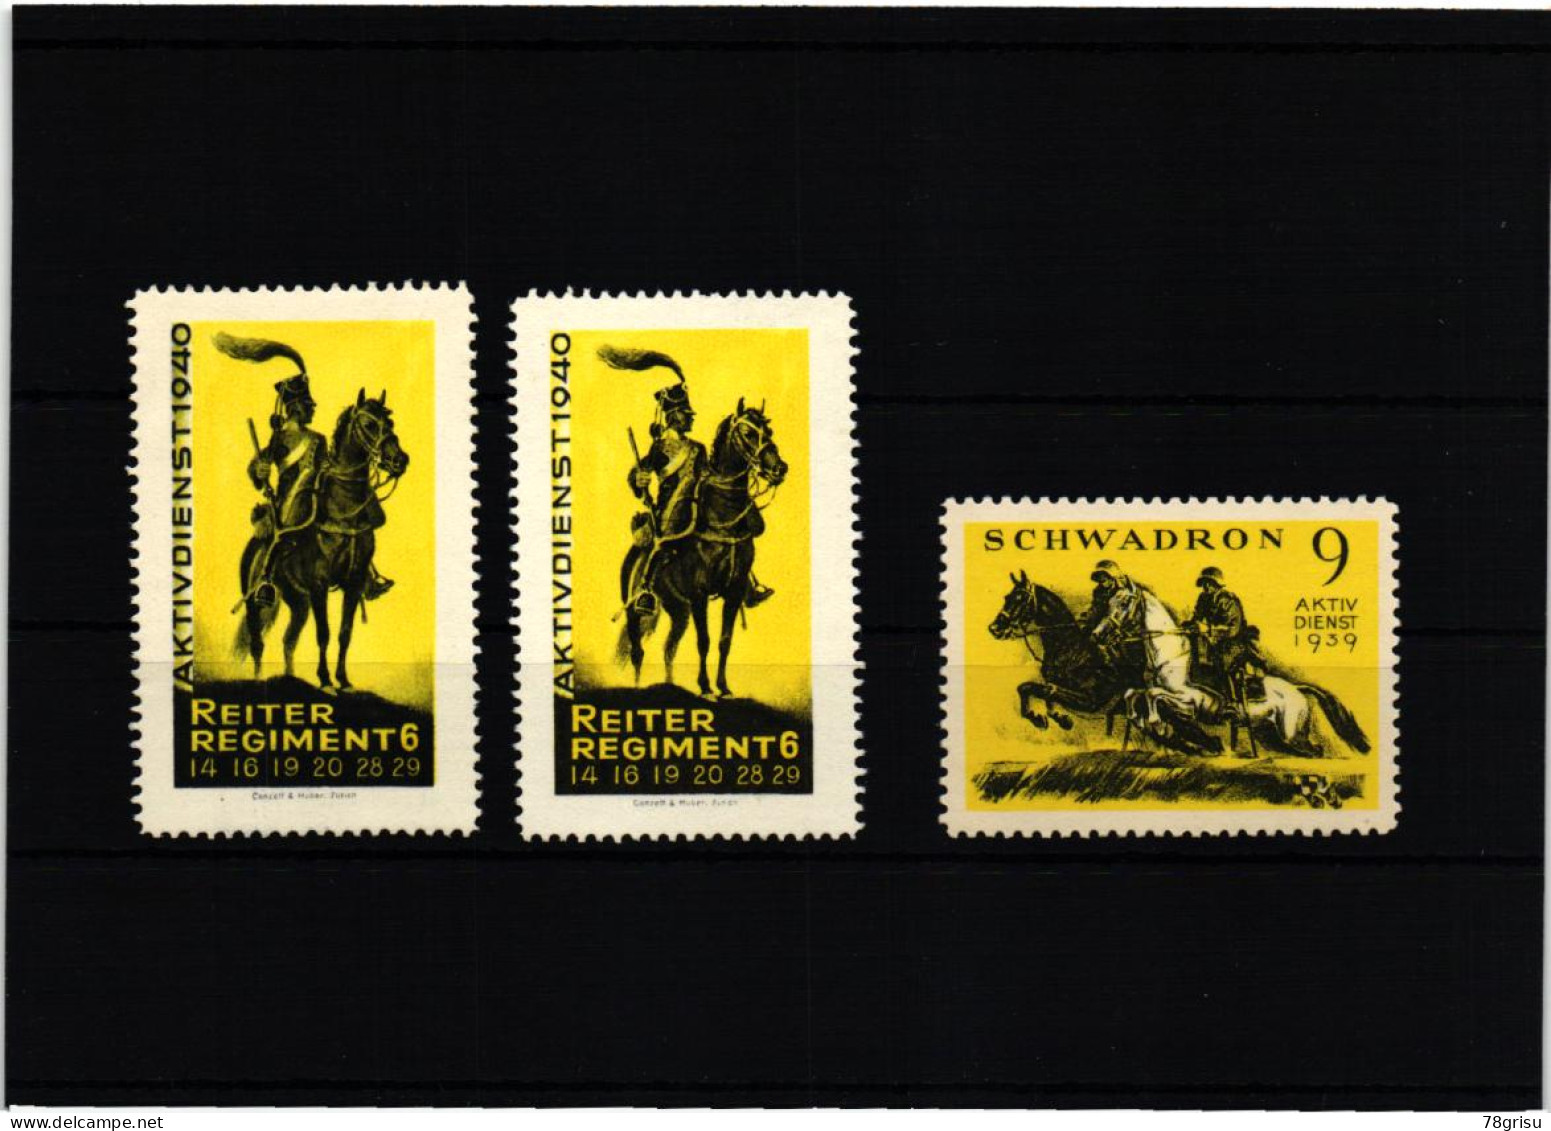 Schweiz Soldatenmarken, Reiter Regiment Schwadron , Aktivdienst 1929 1940 - Labels